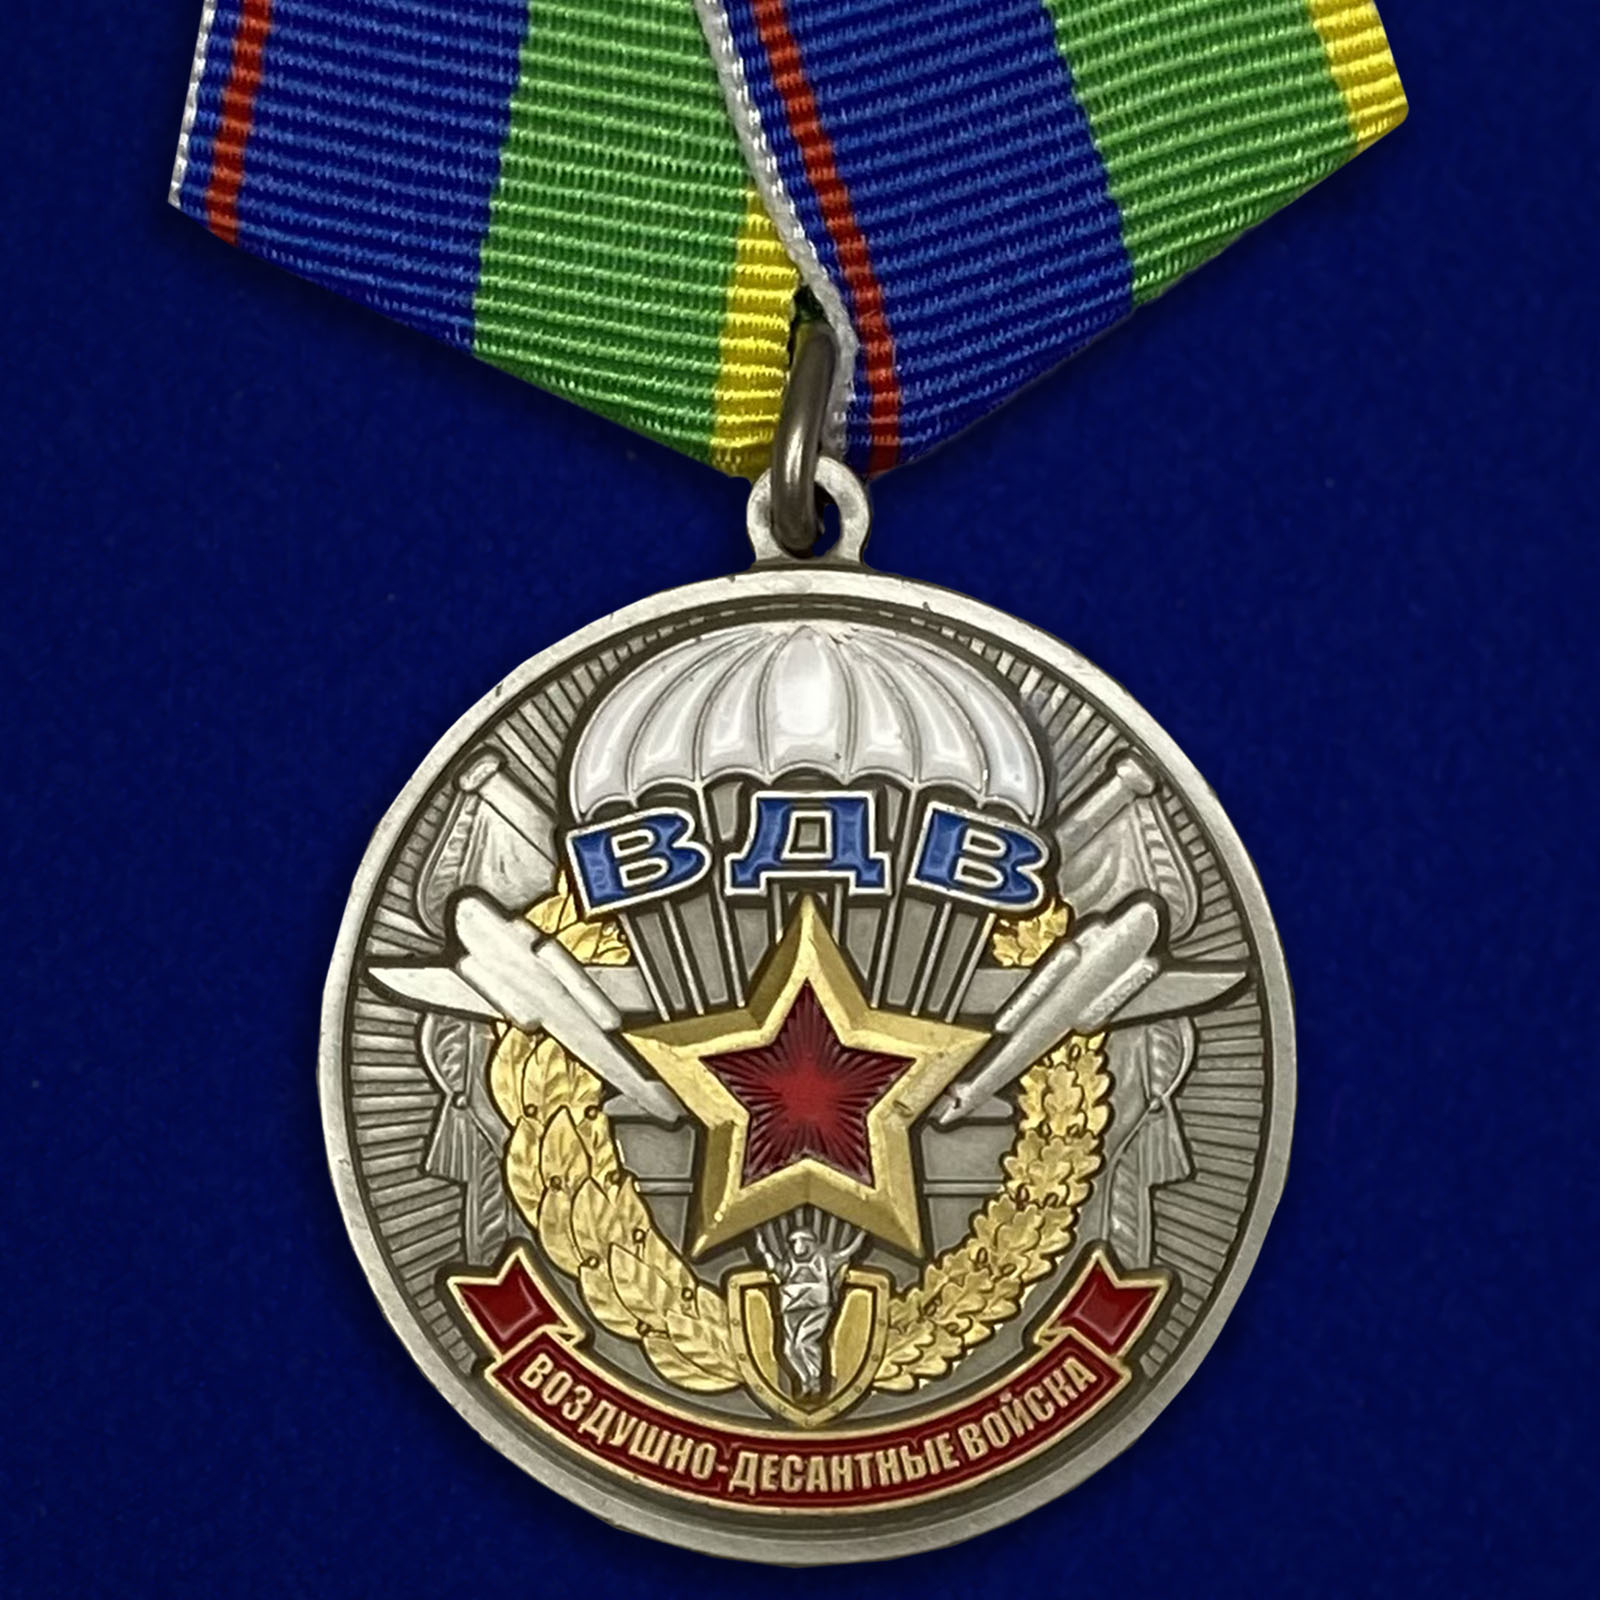 Купить медаль Ветерану воздушно-десантных войск онлайн